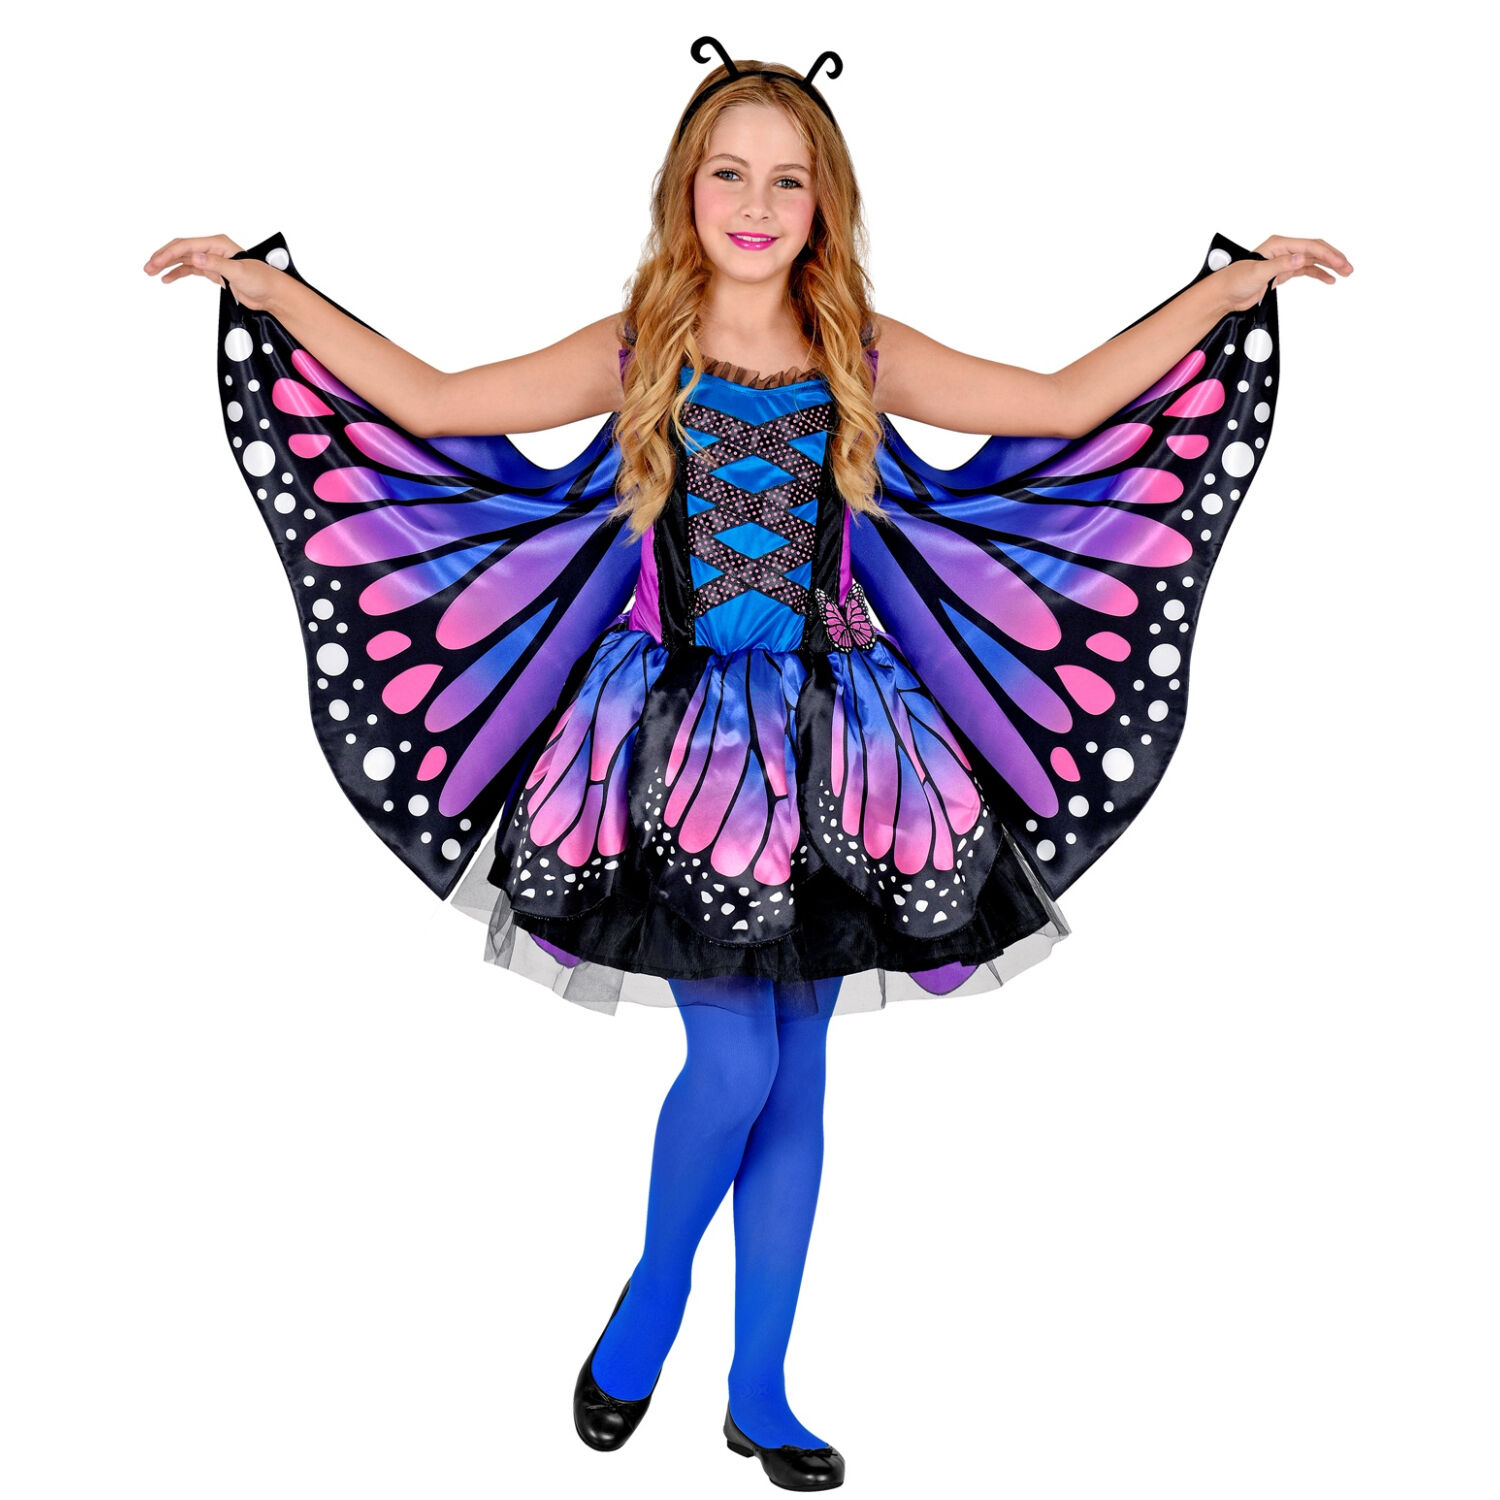 NEU Kinder-Kostüm Schmetterling, Kleid mit Tutu, Flügel, Haarreif, Gr. 116